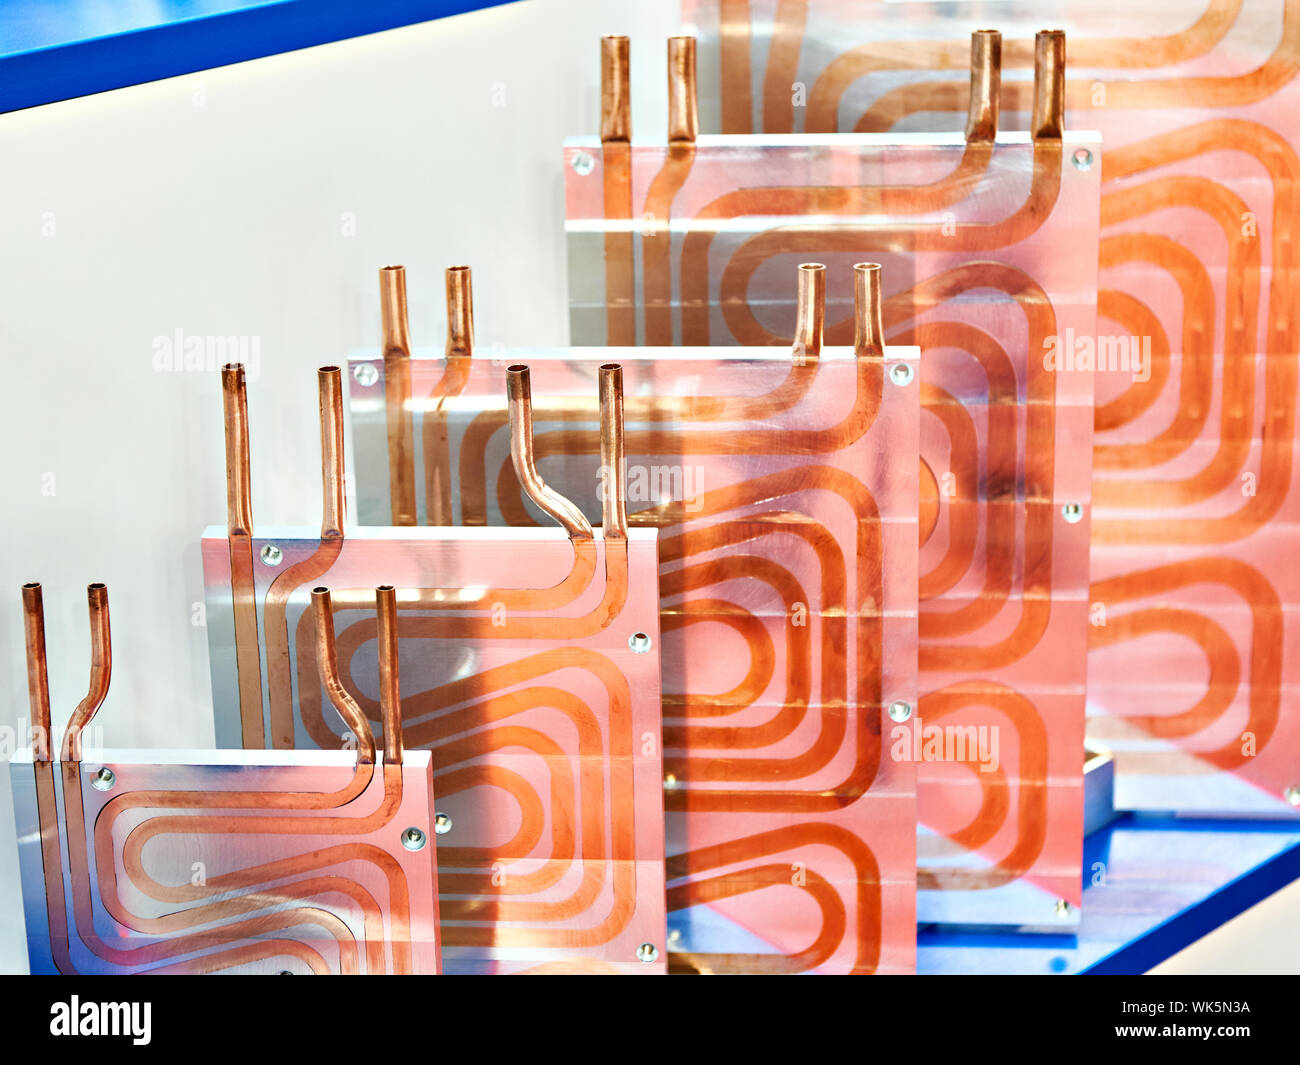 Radiateurs en métal avec des tubes en cuivre à l'exhibition stand Banque D'Images